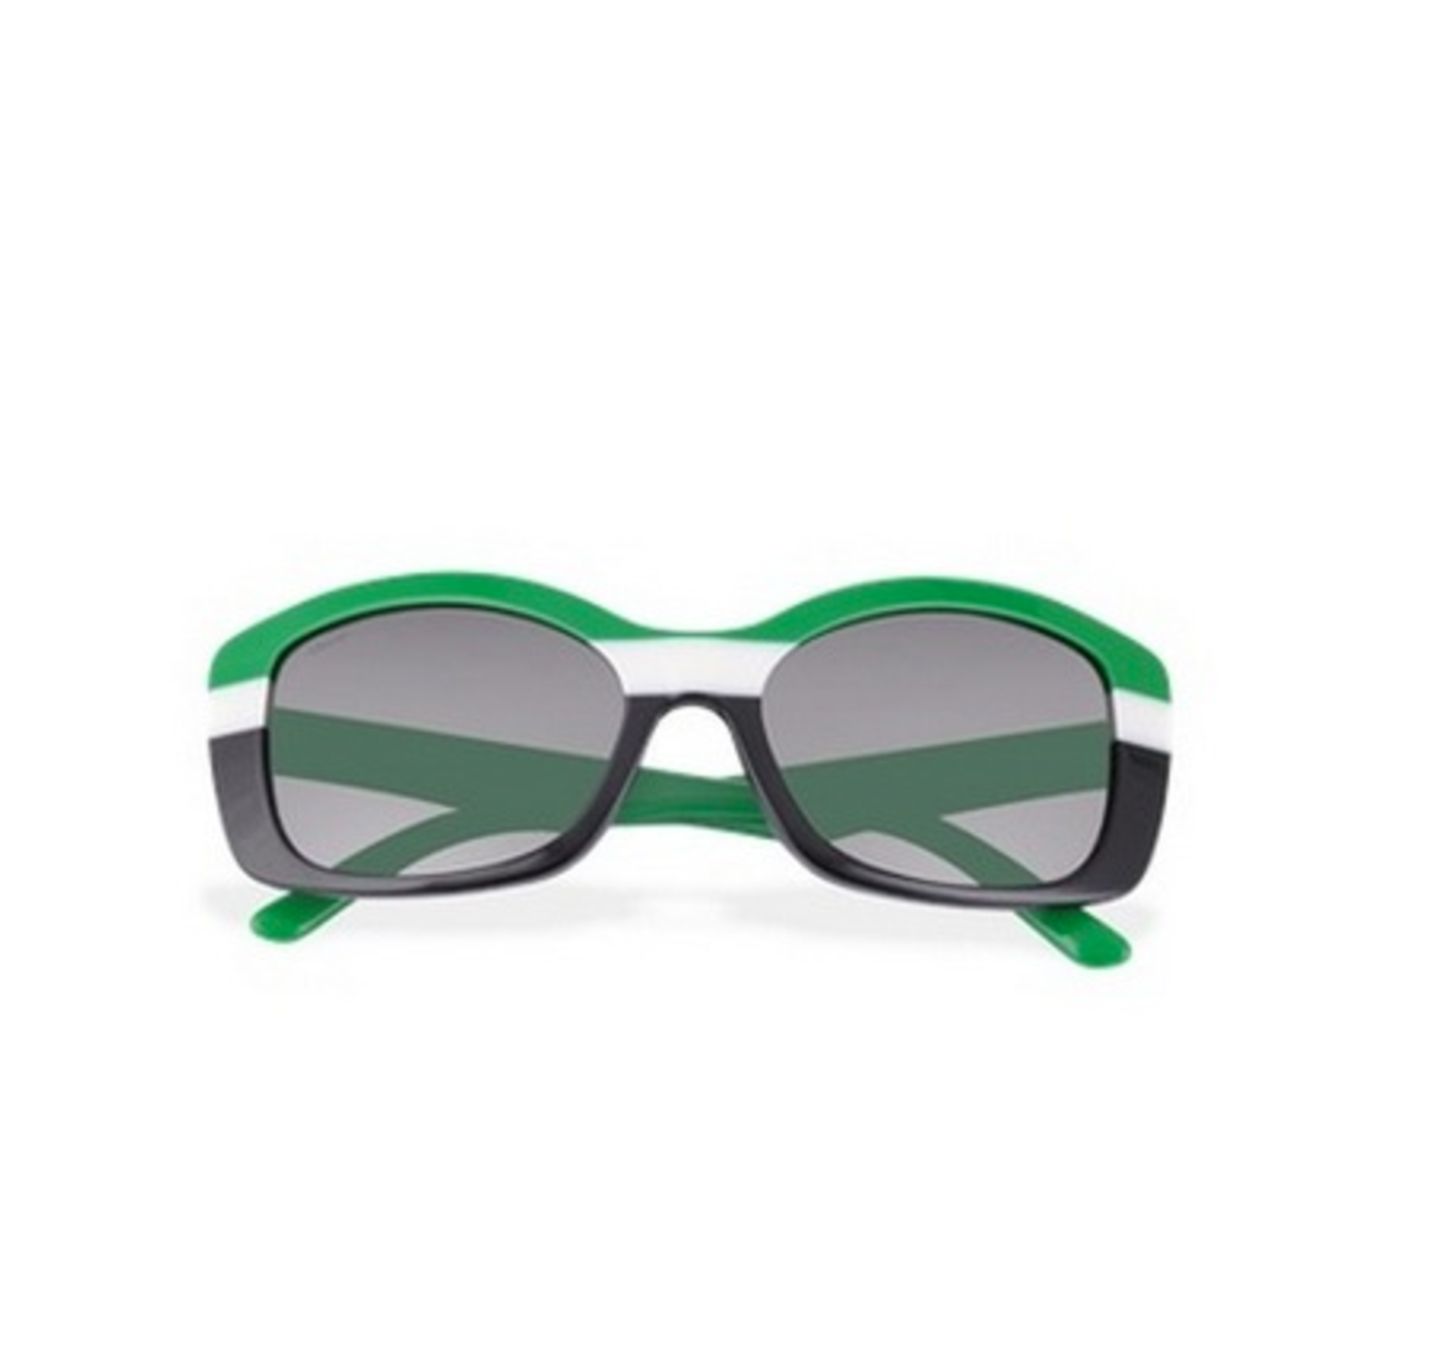 Sommer: Brille mit Blockstreifen in Grün, Weiß und Schwarz, die Gläser bieten 100 Prozent UVA und UVB Schutz, von Prada, ca. 190 Euro.